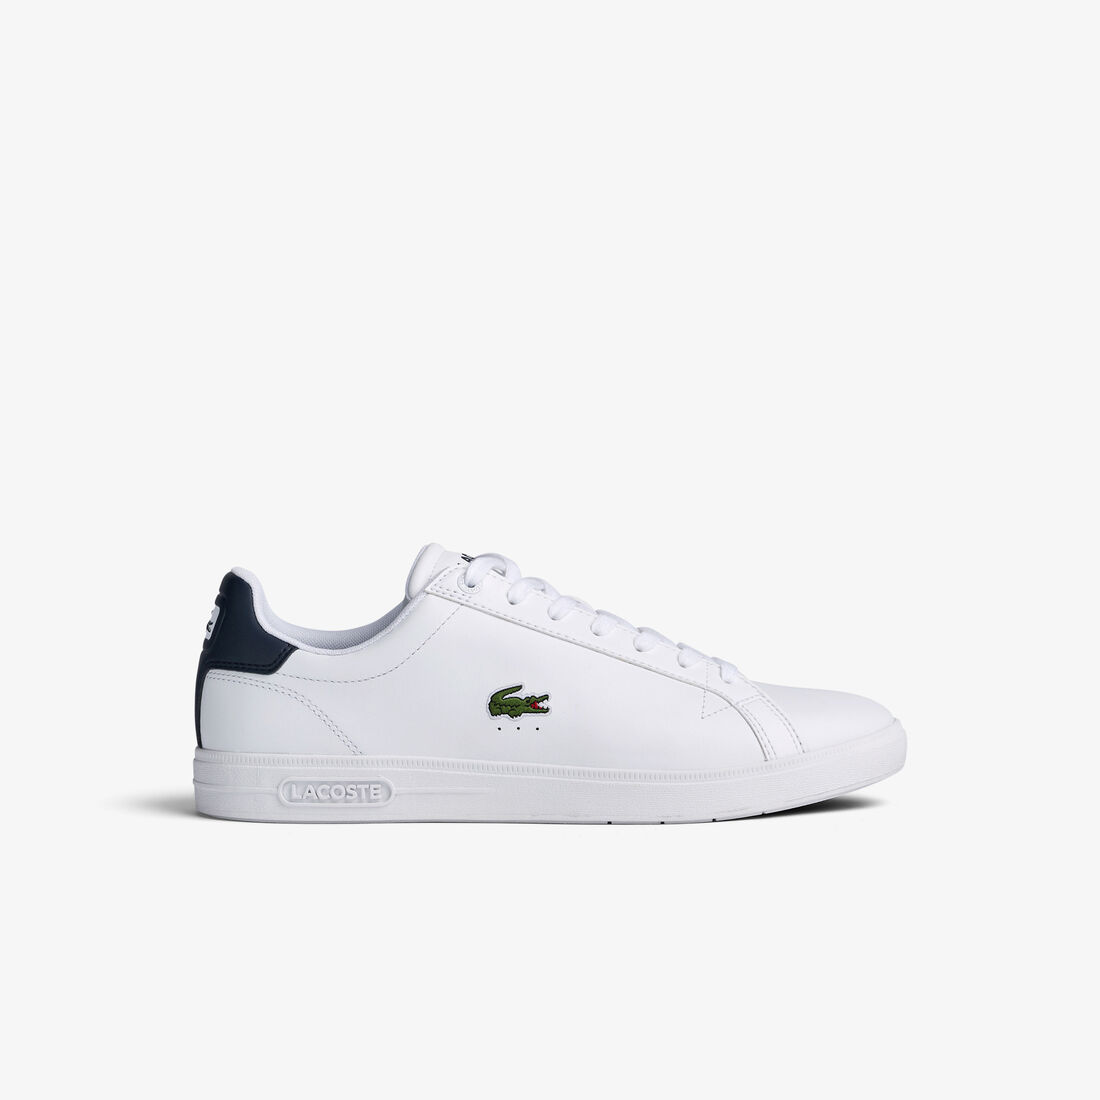 Lacoste Graduate Pro Leder Sneakers Herren Weiß Navy | DBEZ-63710